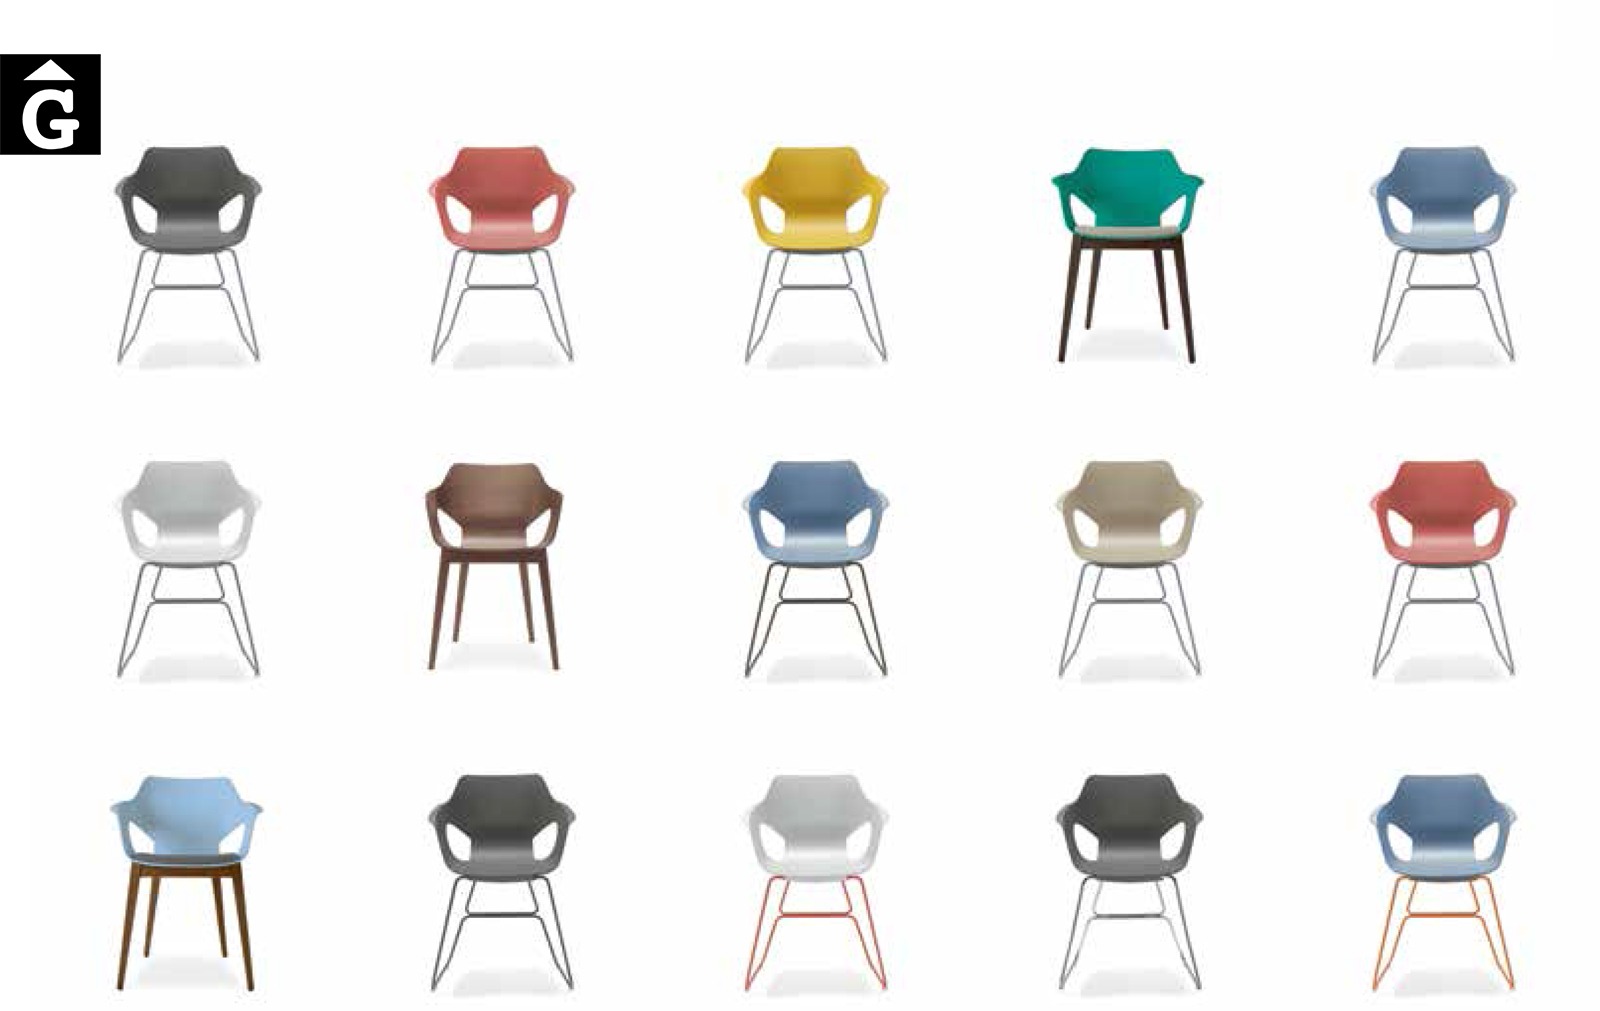 44 3 0 Loyra muebles by mobles Gifreu Idees per la llar moble de qualitat